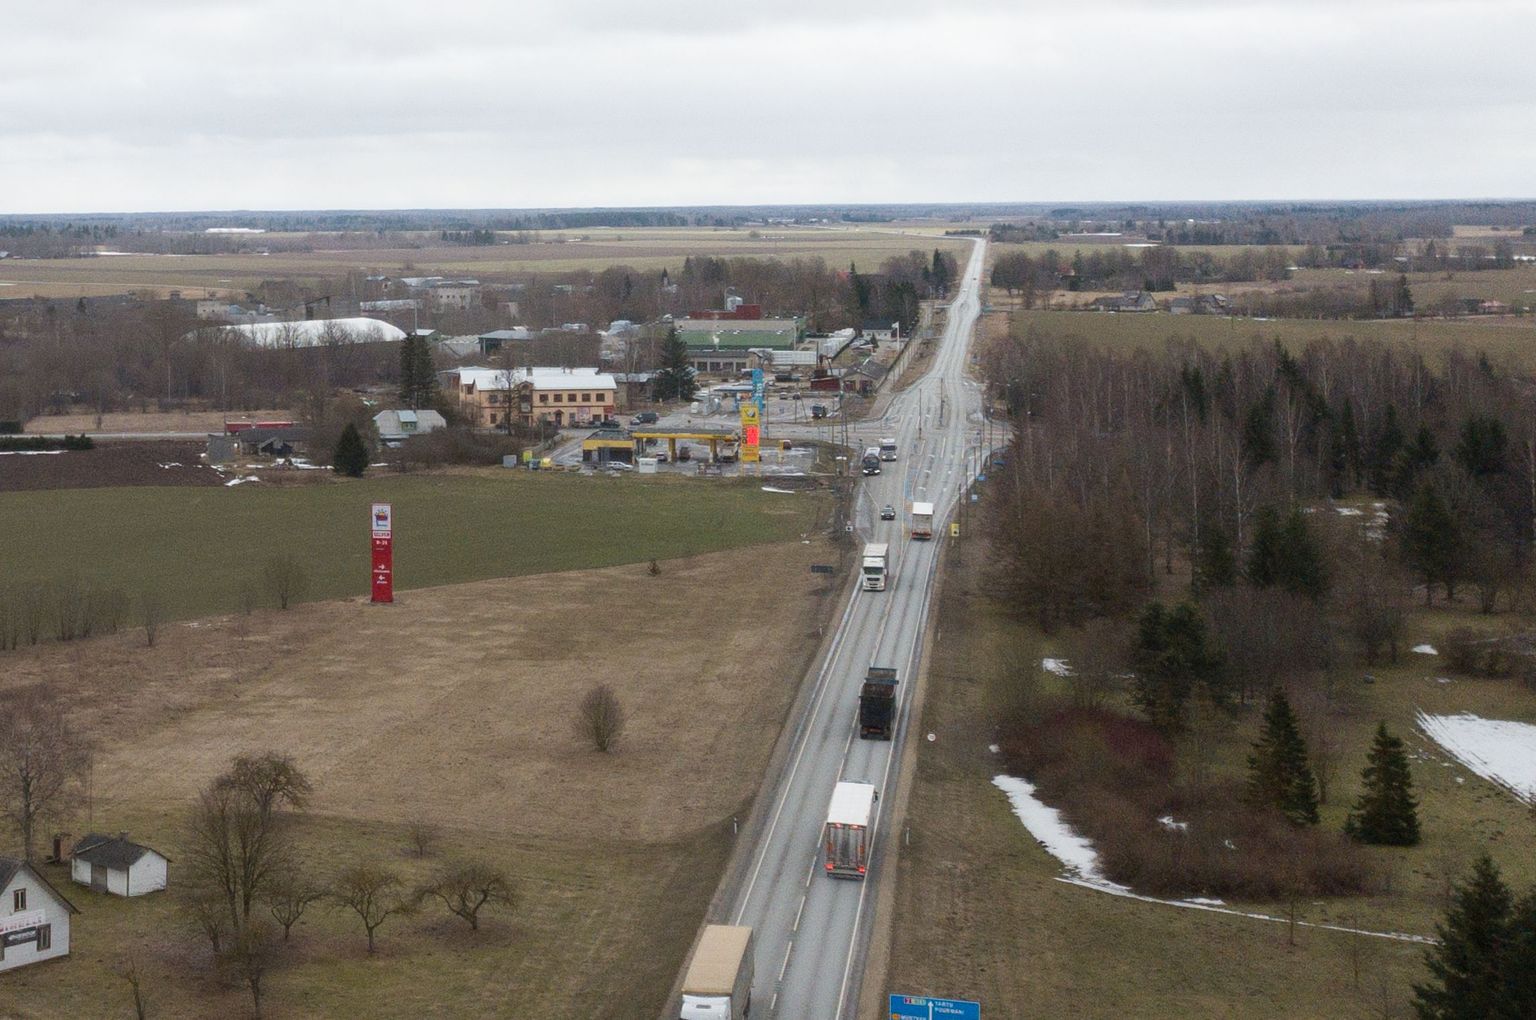 Paljude autojuhtide seas kirutud Tallinn-Tartu maantee Puhu ristmik. Selle keskel asub kiiruskaamera, mis mõõdab kiirust mõlemas suunas.